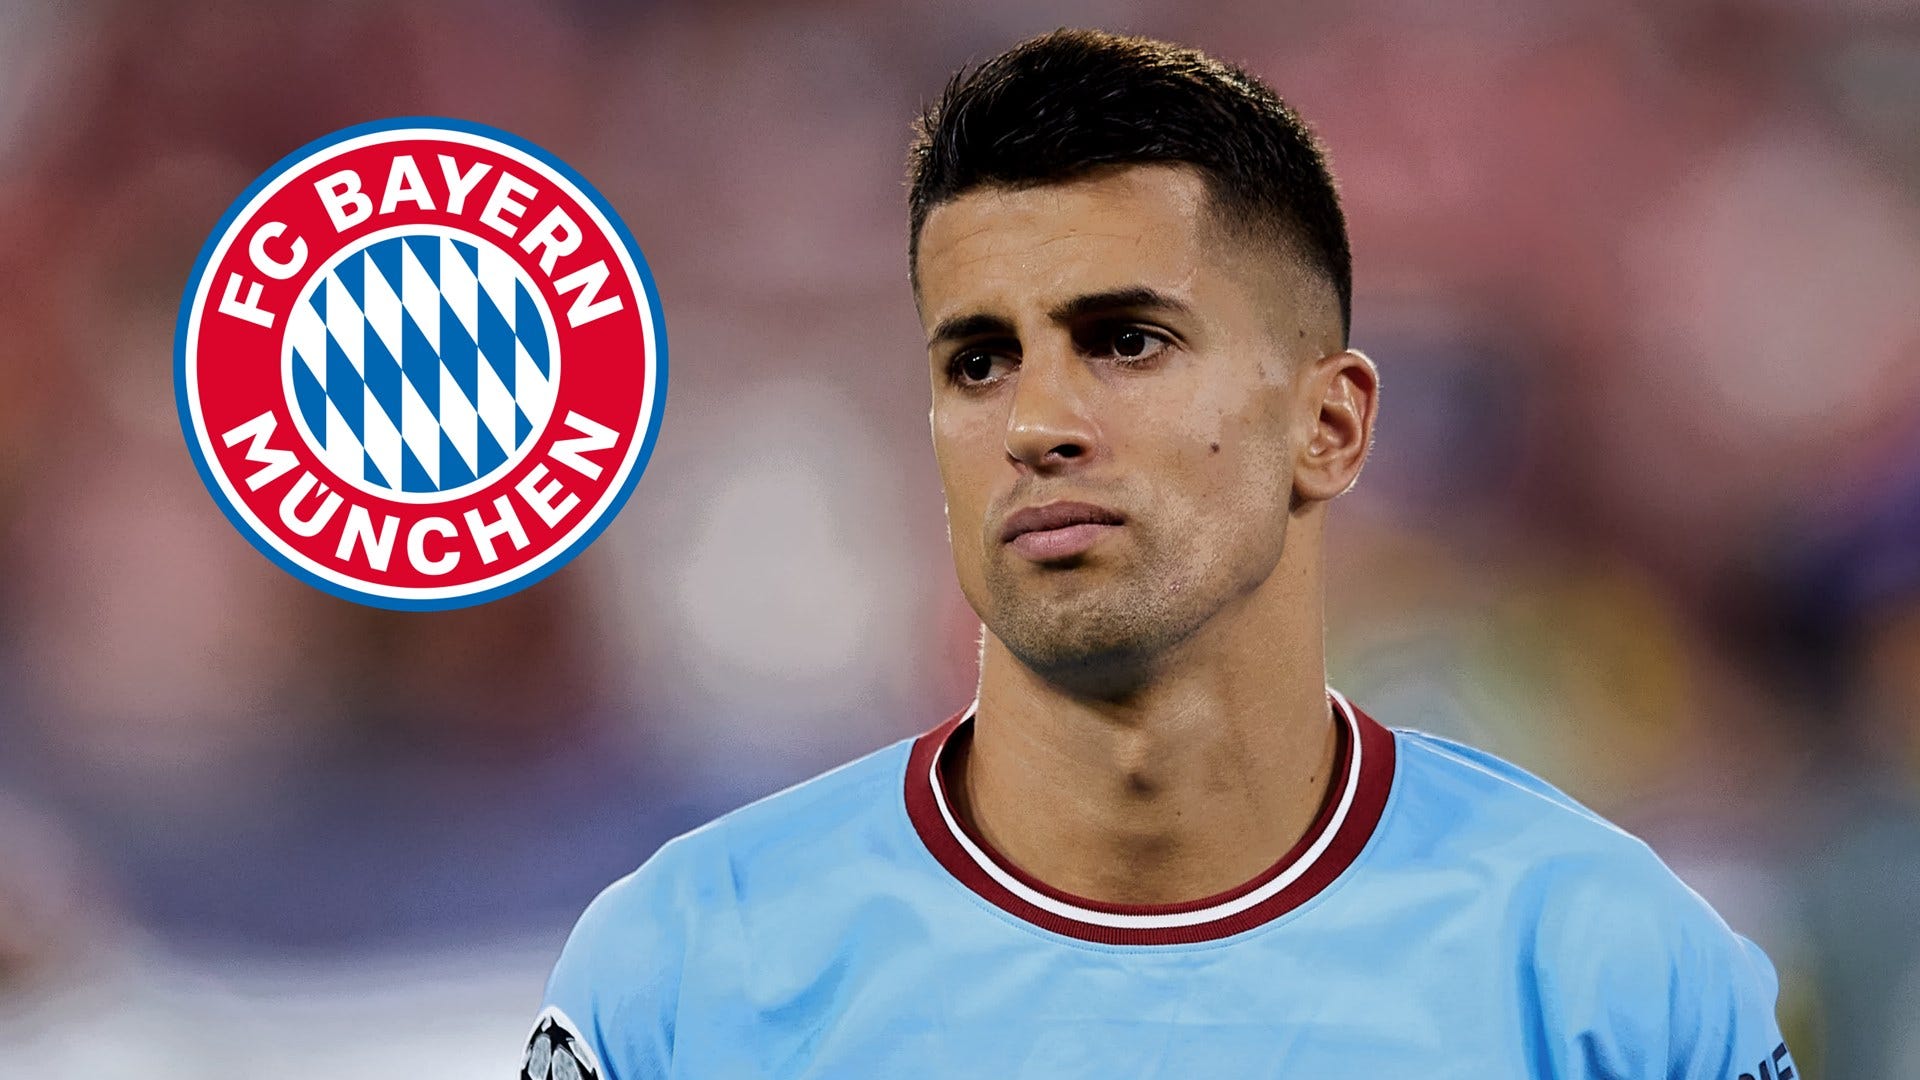 Offiziell! FC Bayern München leiht João Cancelo von Manchester City aus